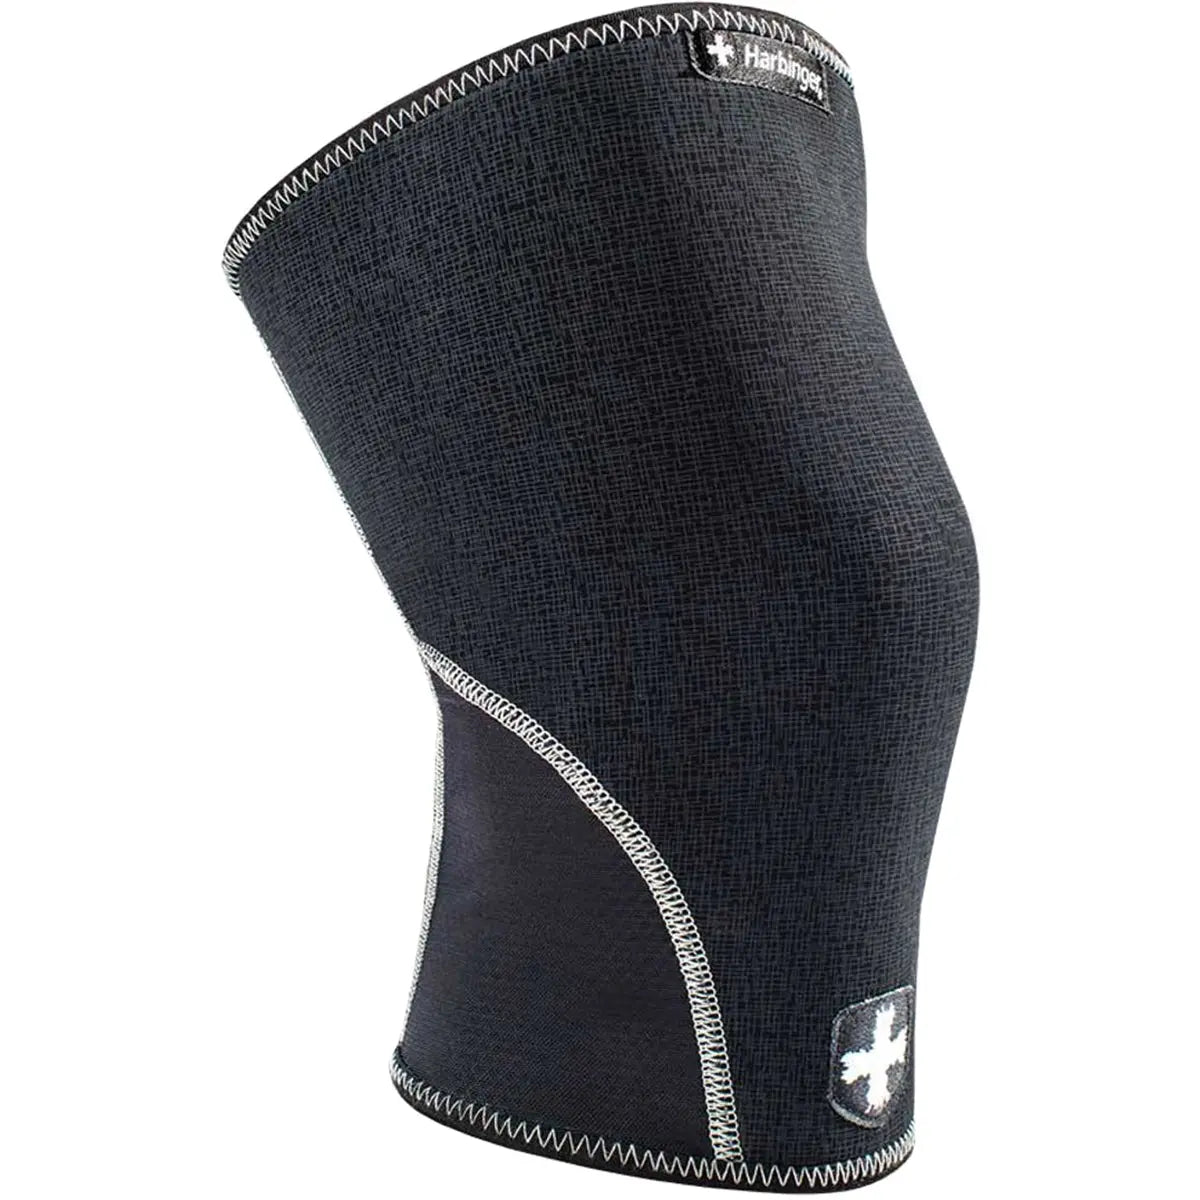 Harbinger Stabilizer Knee Sleeves - Large - Black Harbinger